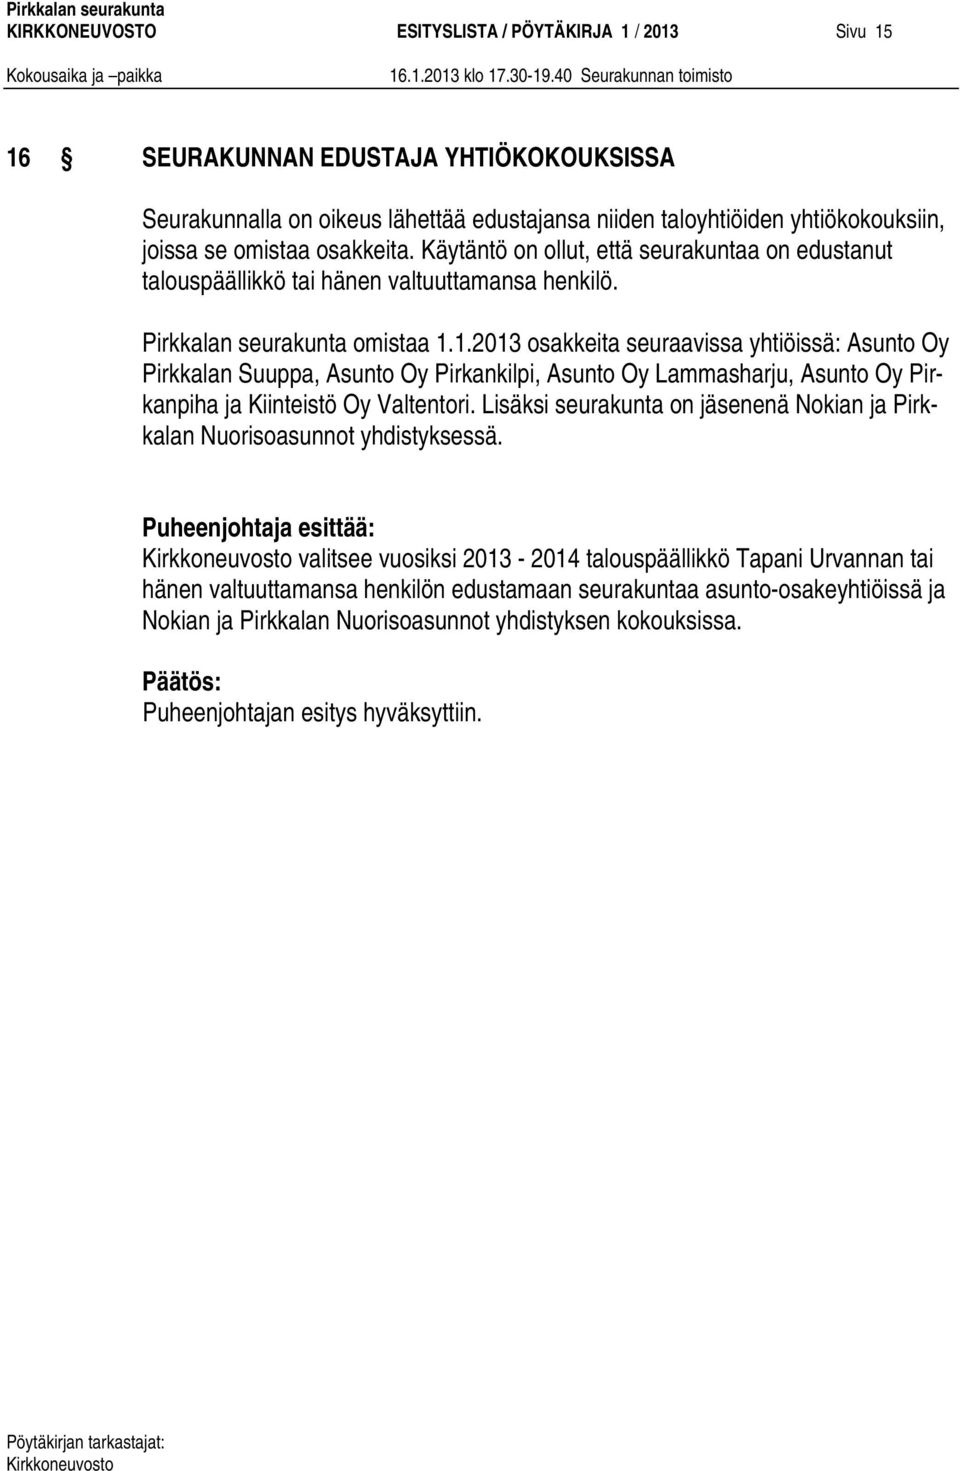 1.2013 osakkeita seuraavissa yhtiöissä: Asunto Oy Pirkkalan Suuppa, Asunto Oy Pirkankilpi, Asunto Oy Lammasharju, Asunto Oy Pirkanpiha ja Kiinteistö Oy Valtentori.